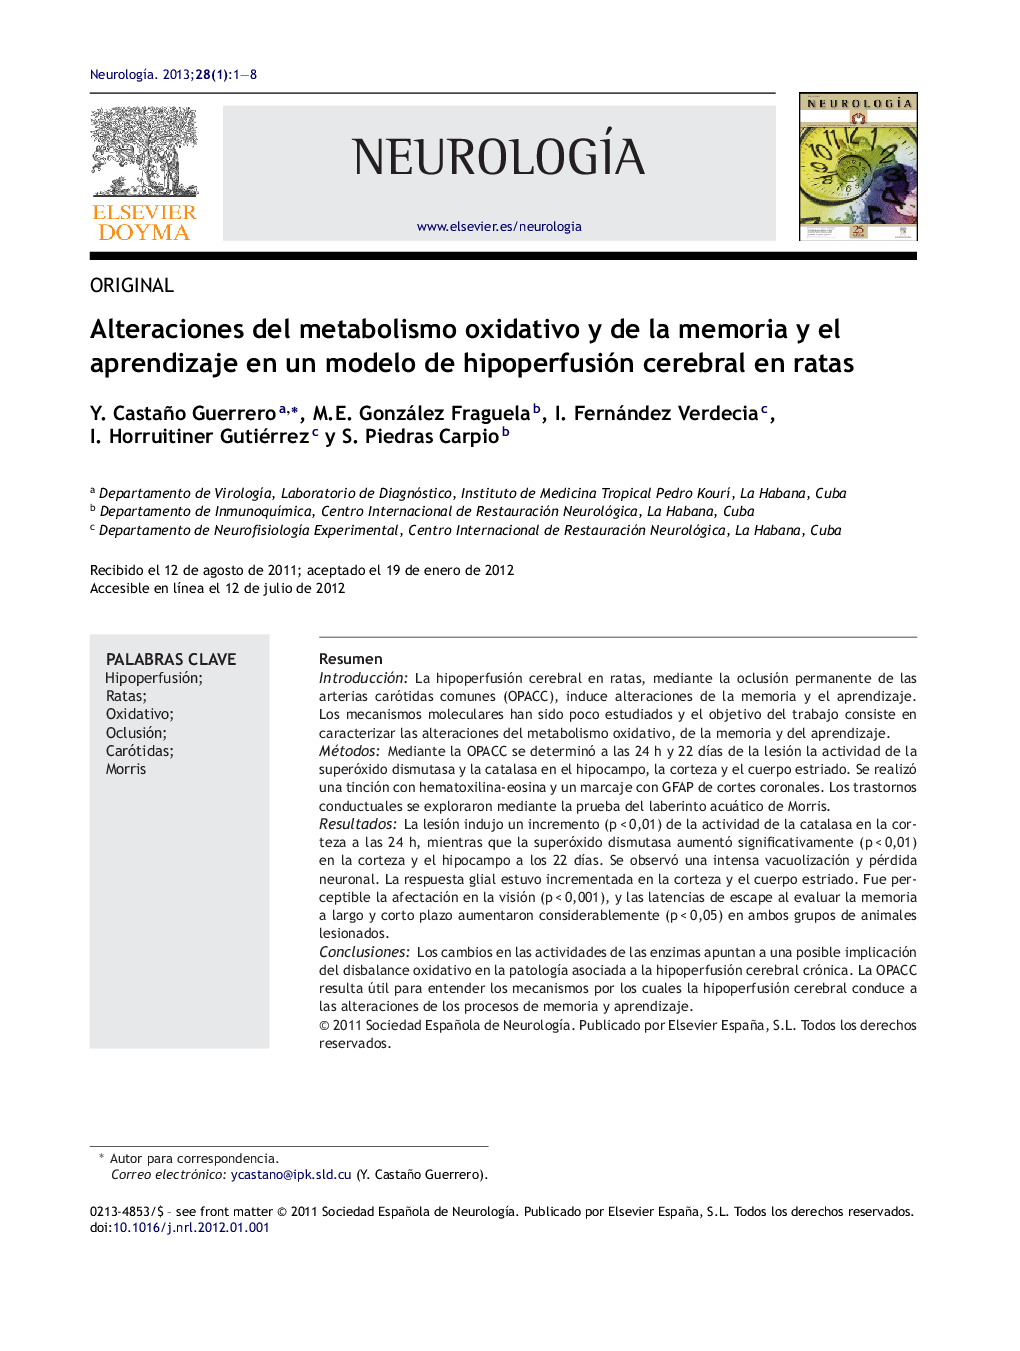 Alteraciones del metabolismo oxidativo y de la memoria y el aprendizaje en un modelo de hipoperfusión cerebral en ratas